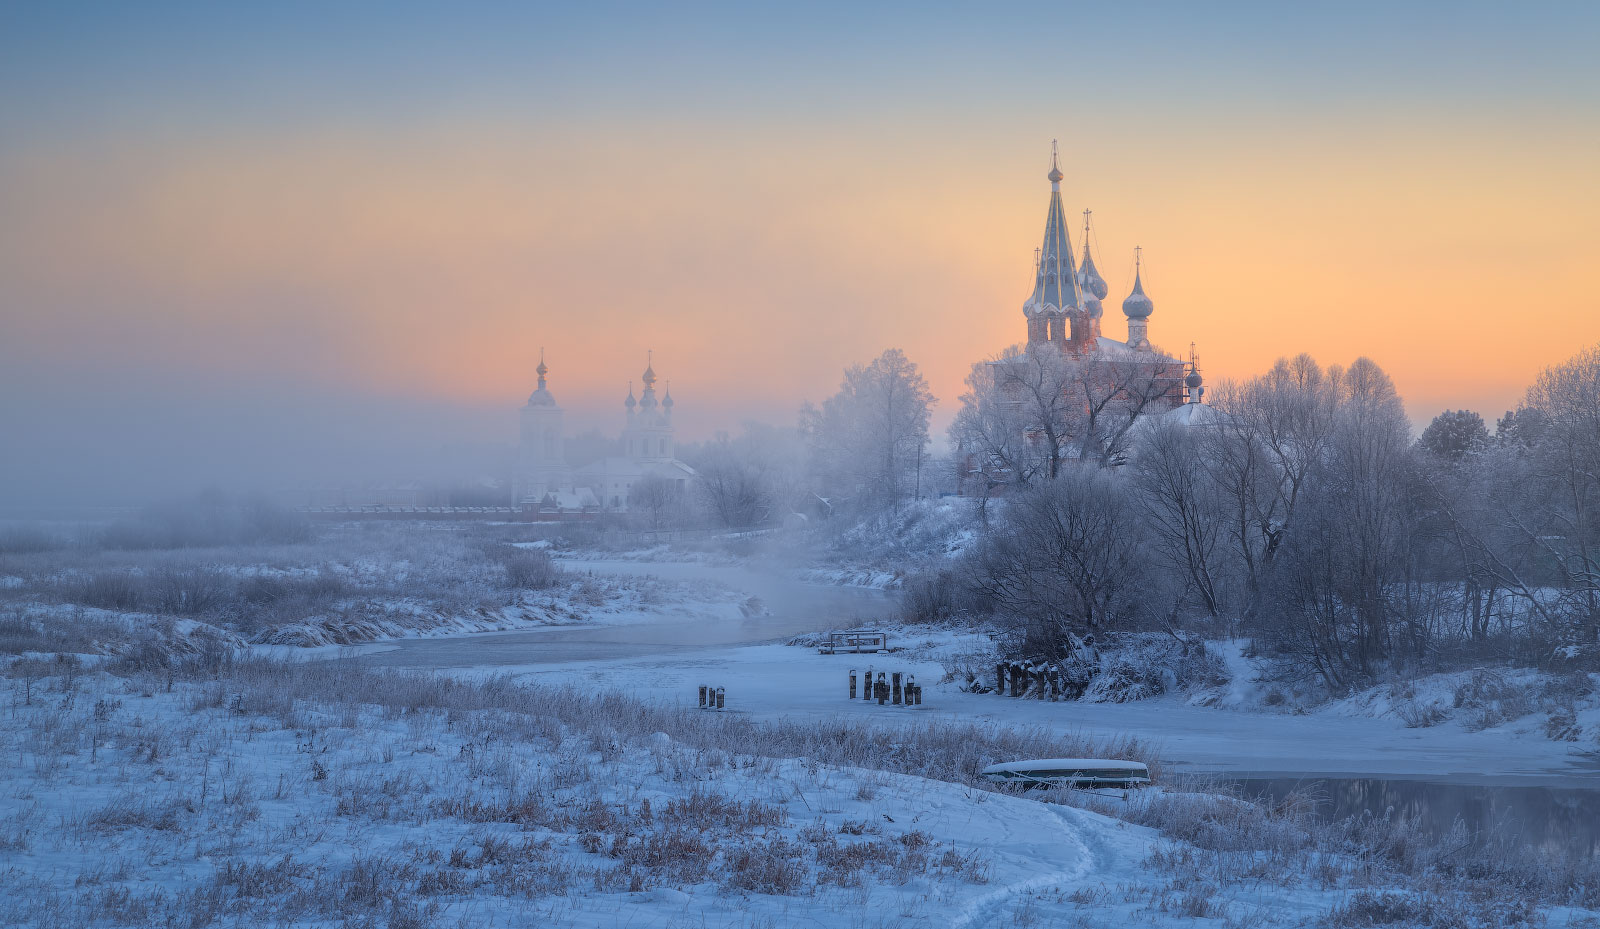 Дуниловские морозы Дунилово Ивановская область рассвет зима мороз иней туман село храм